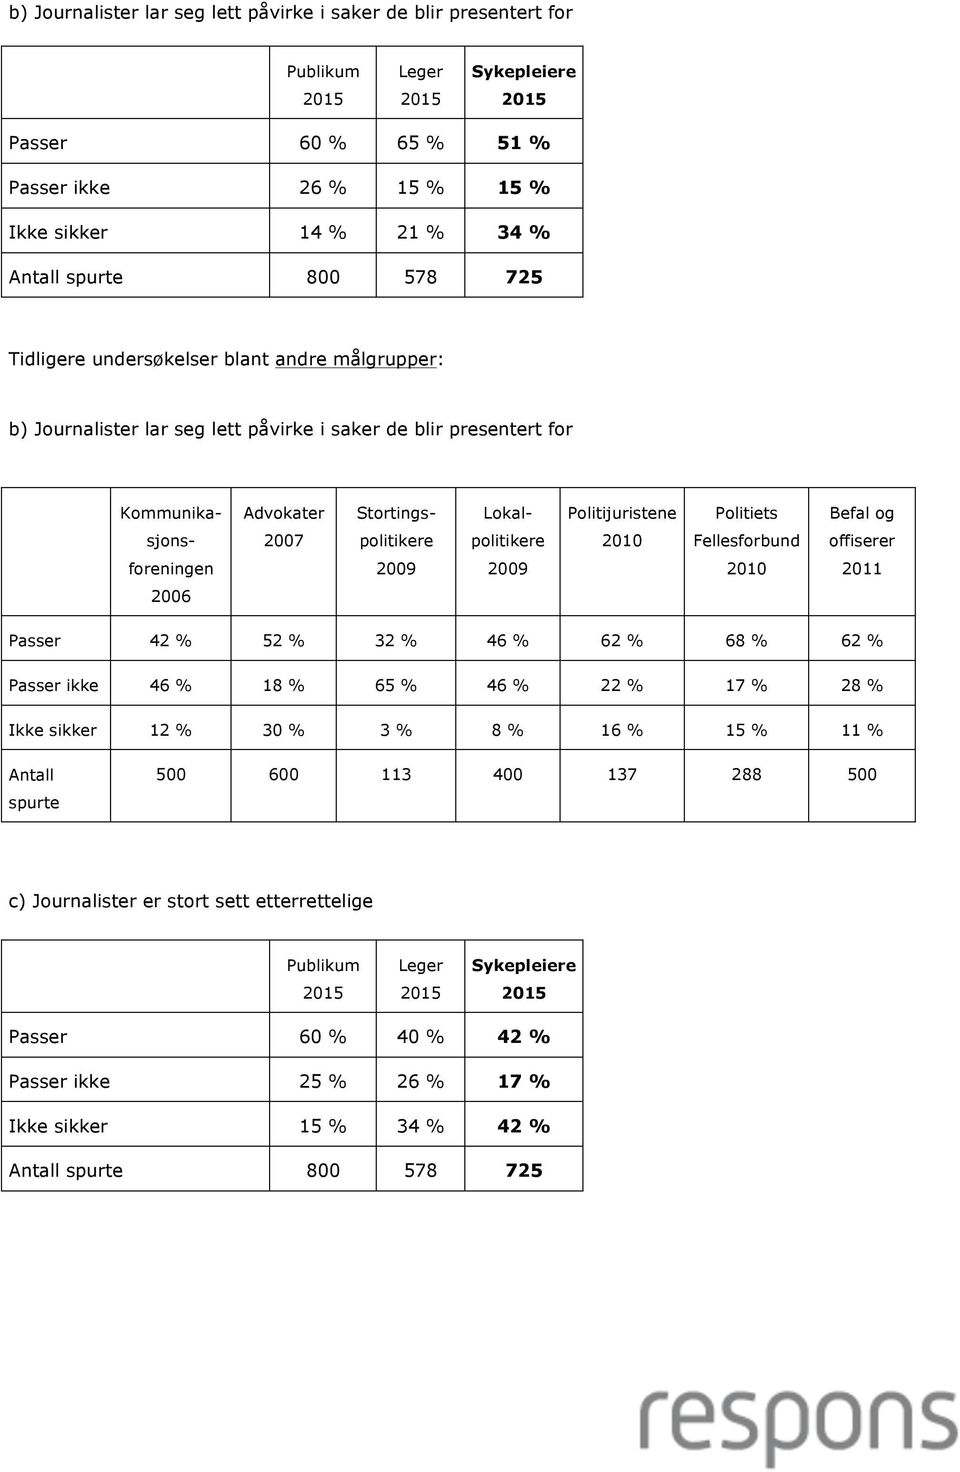 2010 Fellesforbund offiserer foreningen 2009 2009 2010 2011 2006 Passer 42 % 52 % 32 % 46 % 62 % 68 % 62 % Passer ikke 46 % 18 % 65 % 46 % 22 % 17 % 28 % Ikke sikker 12 % 30 % 3 % 8 % 16 %